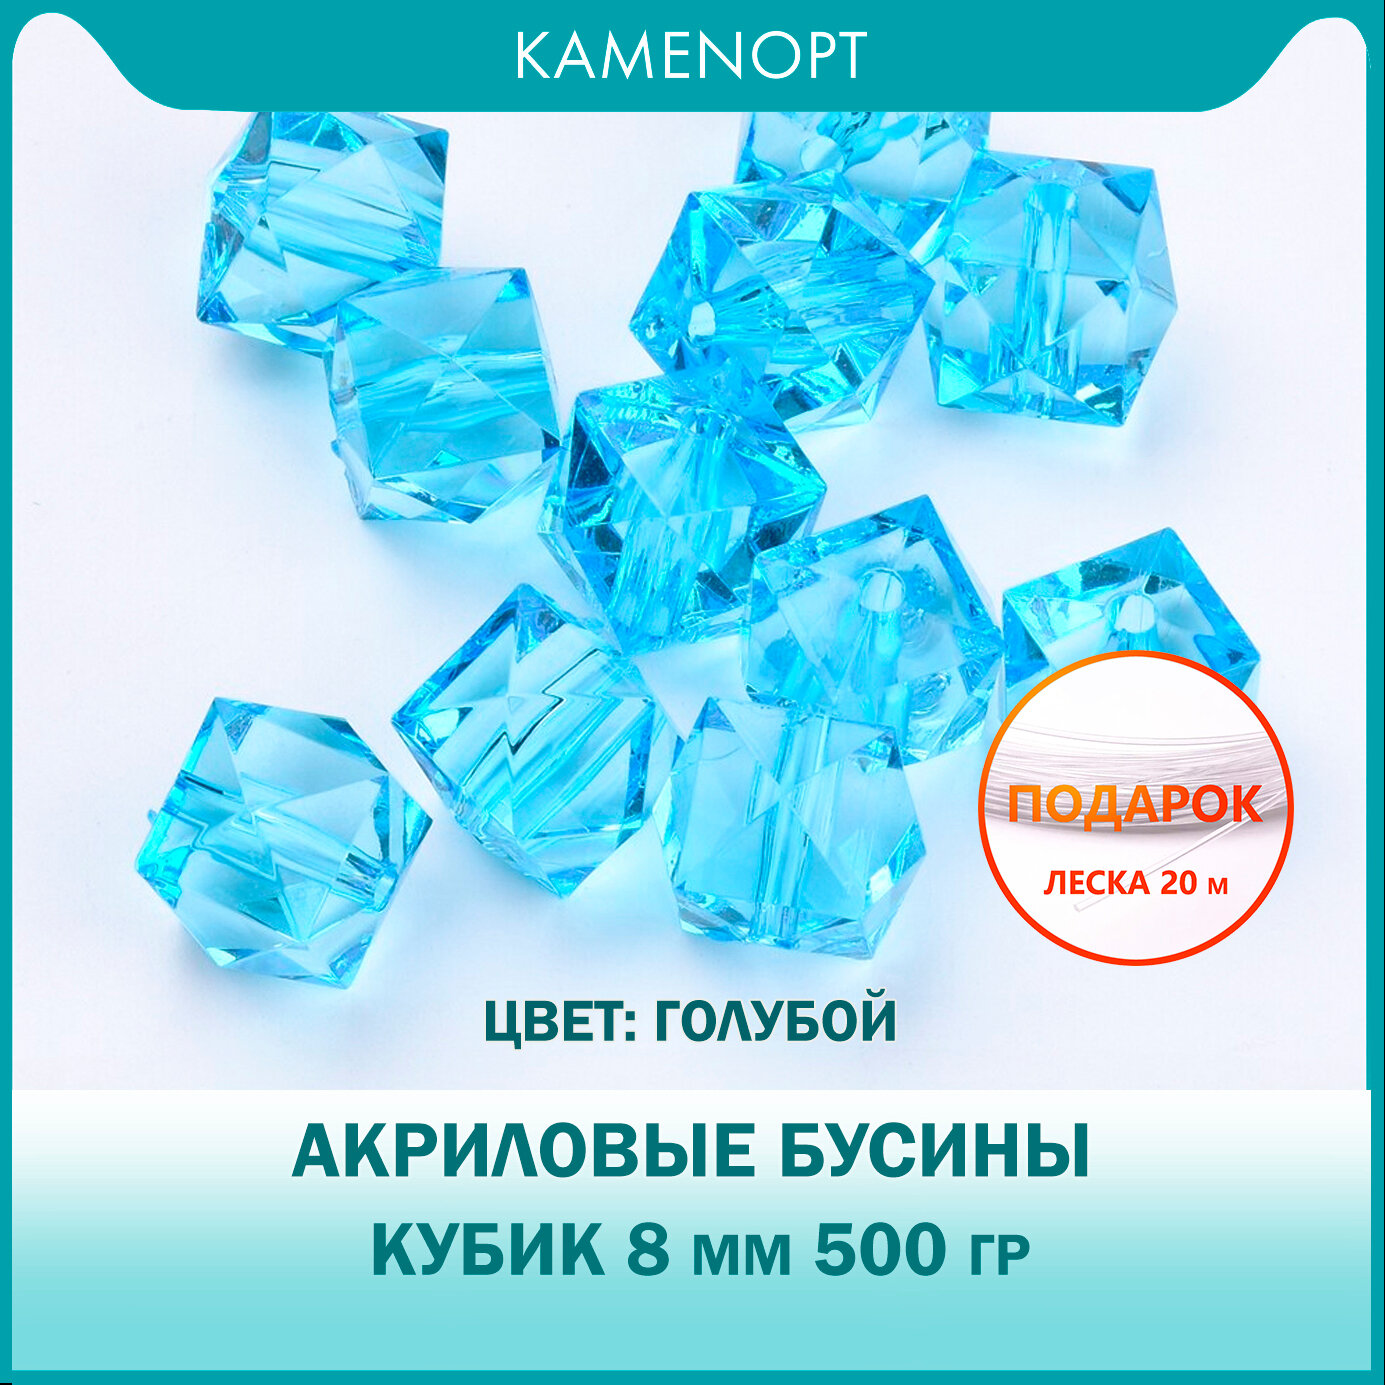 Бусины Акриловые Кубик граненые 8 мм, цвет: Голубой, уп/500 гр (1800 шт)